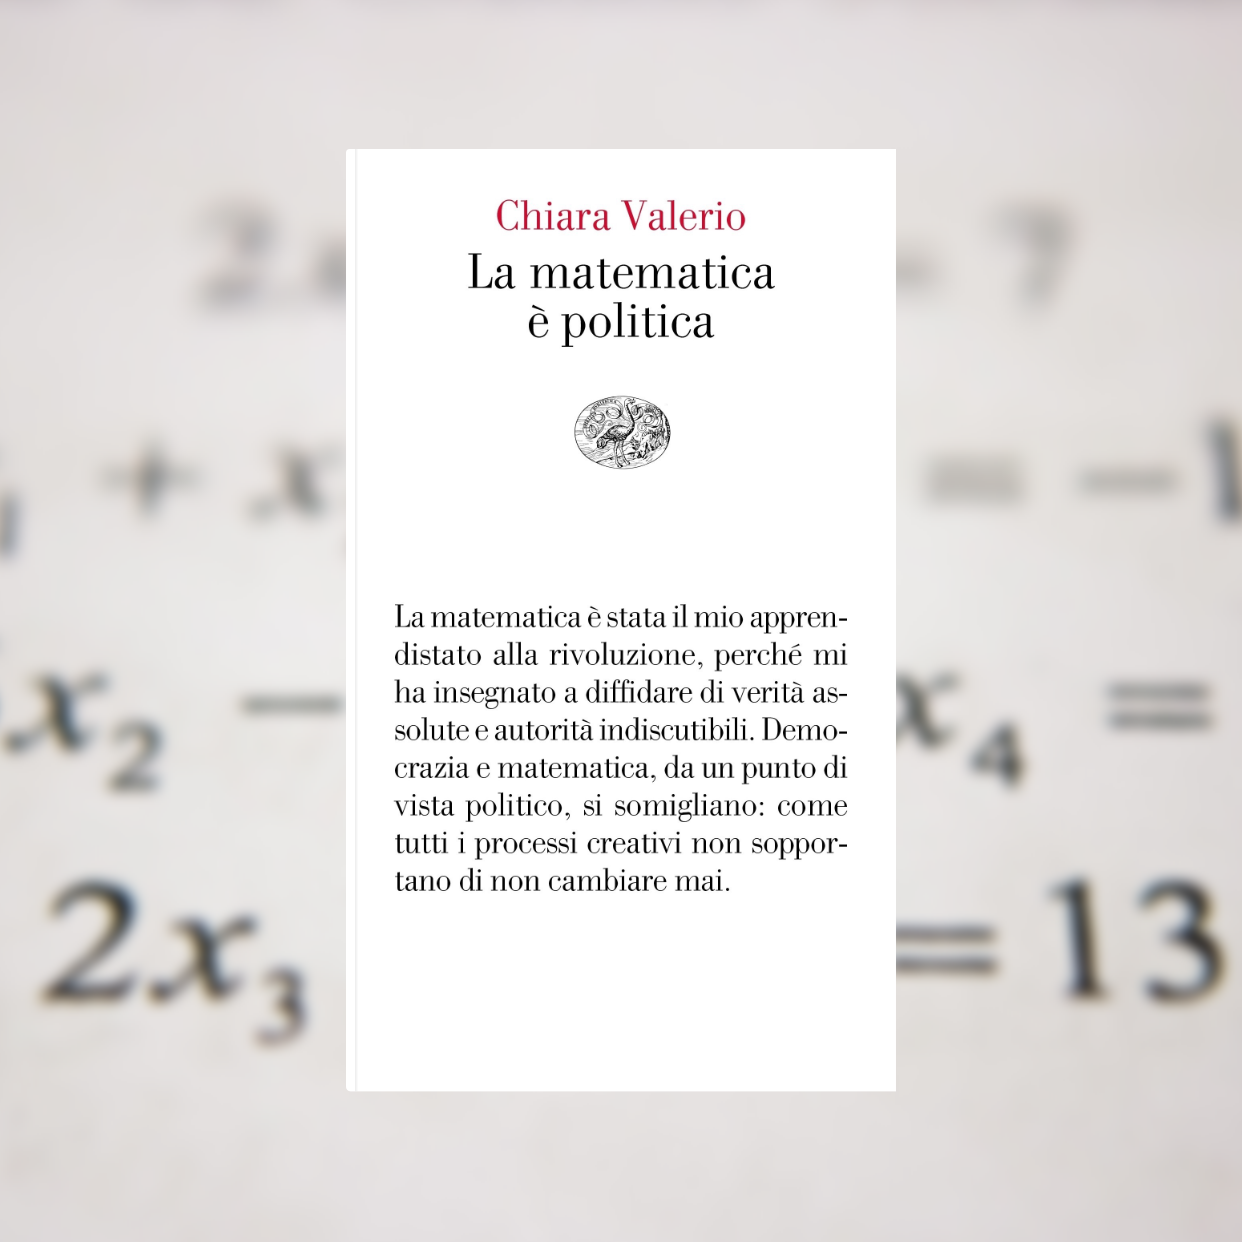 Il “teorema letterario” di Chiara Valerio: la matematica è politica